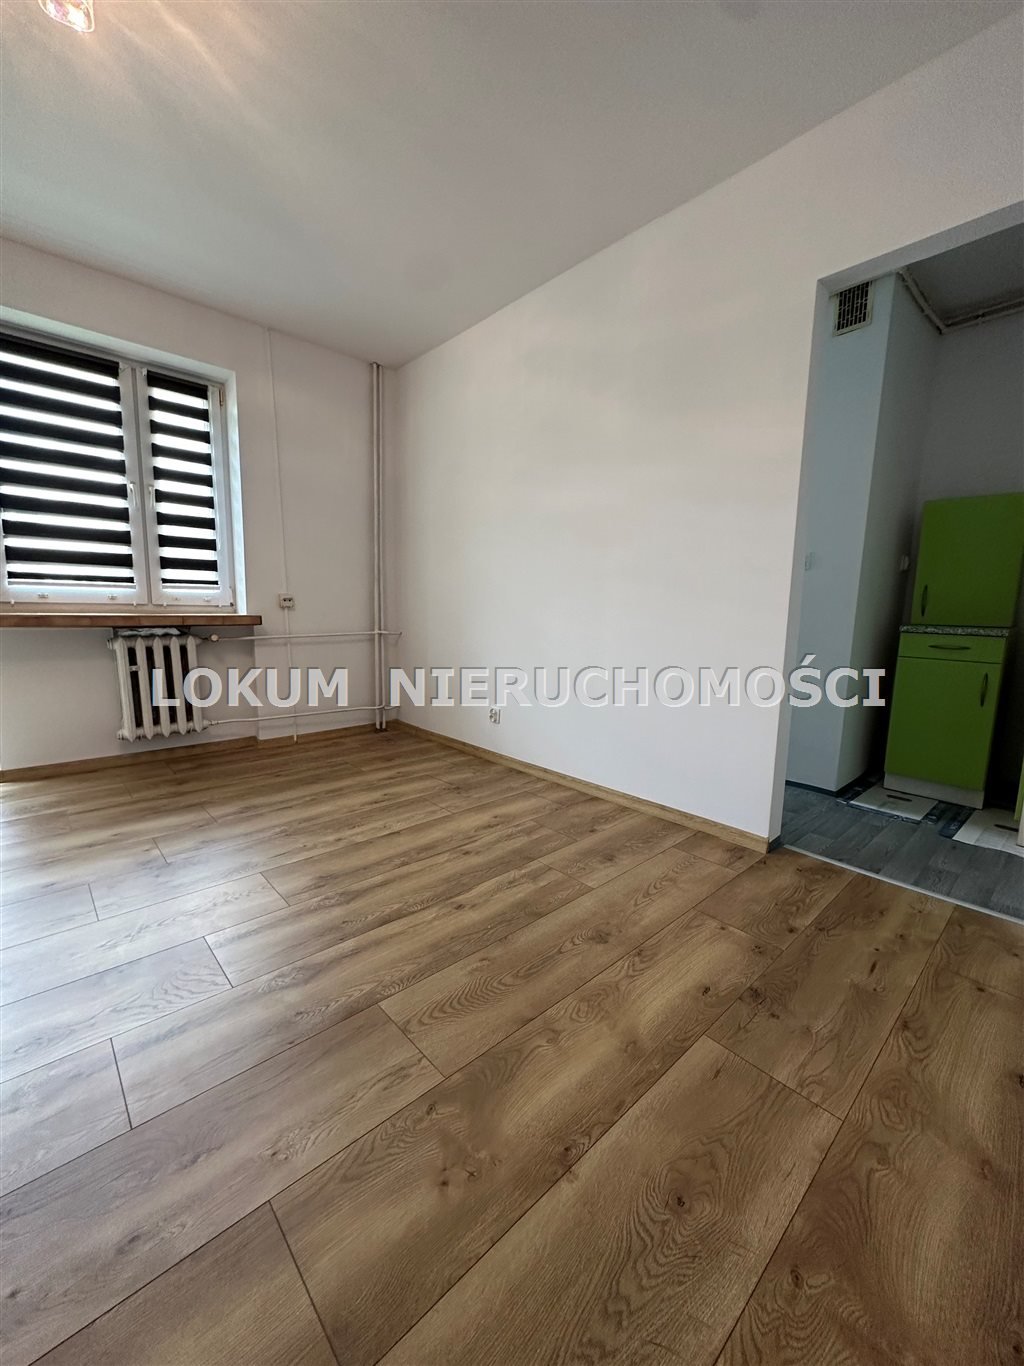 Mieszkanie dwupokojowe na sprzedaż Jastrzębie-Zdrój, Szeroka, 1000 Lecia  38m2 Foto 1